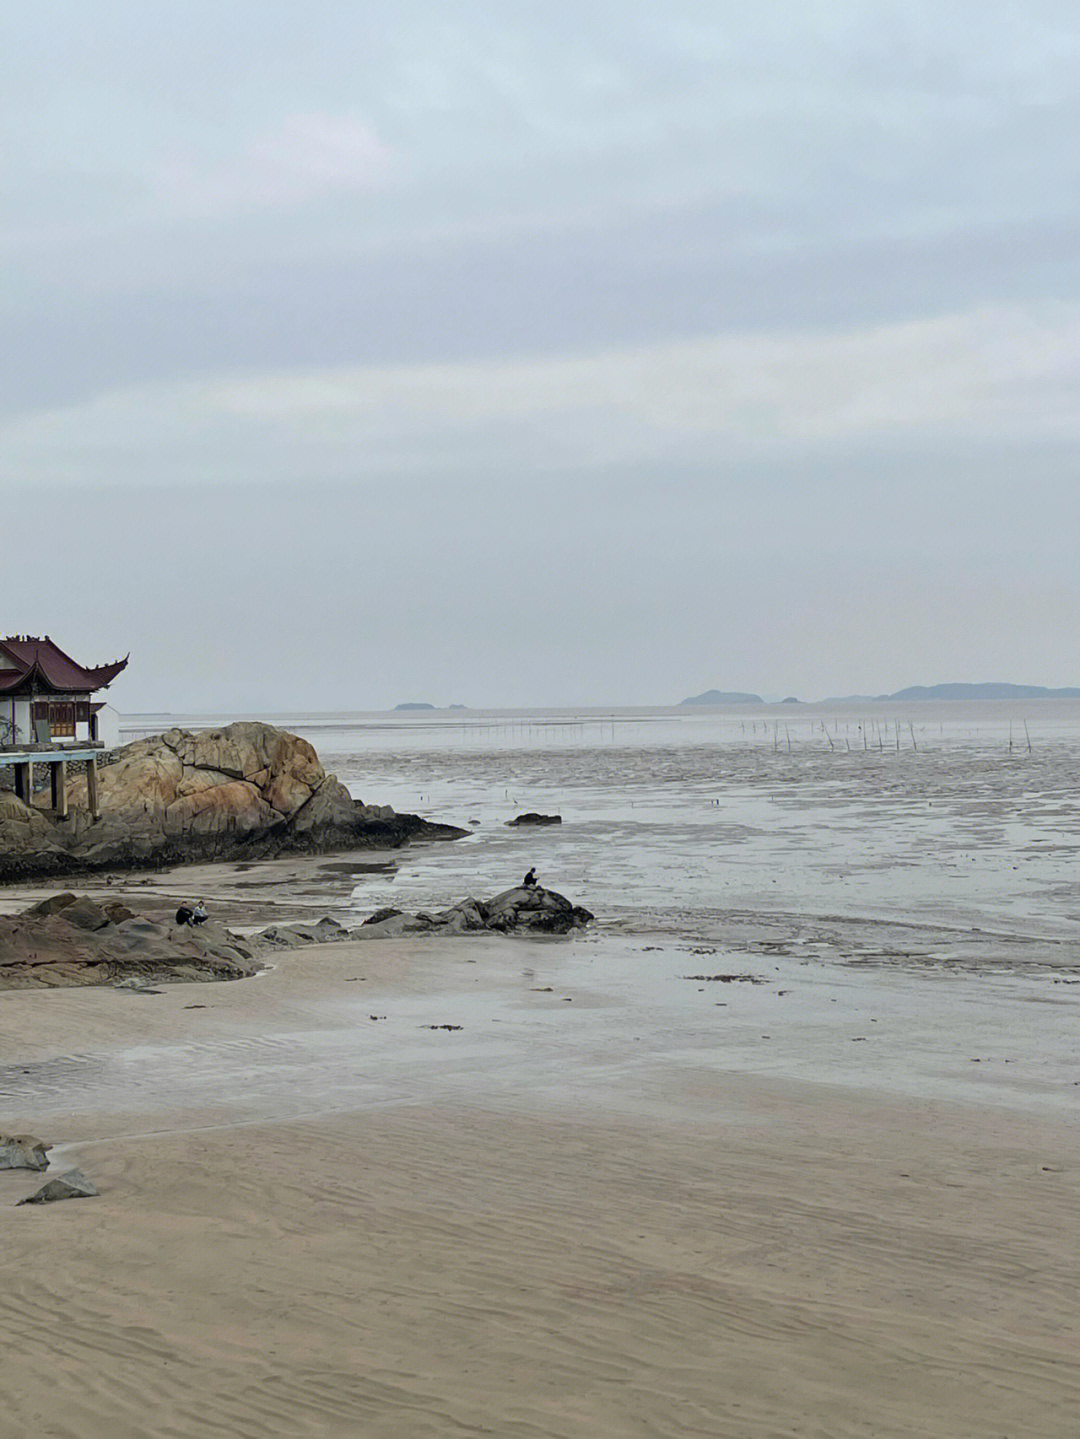 拍摄地点:温州平阳西湾金沙滩,一个开发ing的地方西湾是目的地,但金